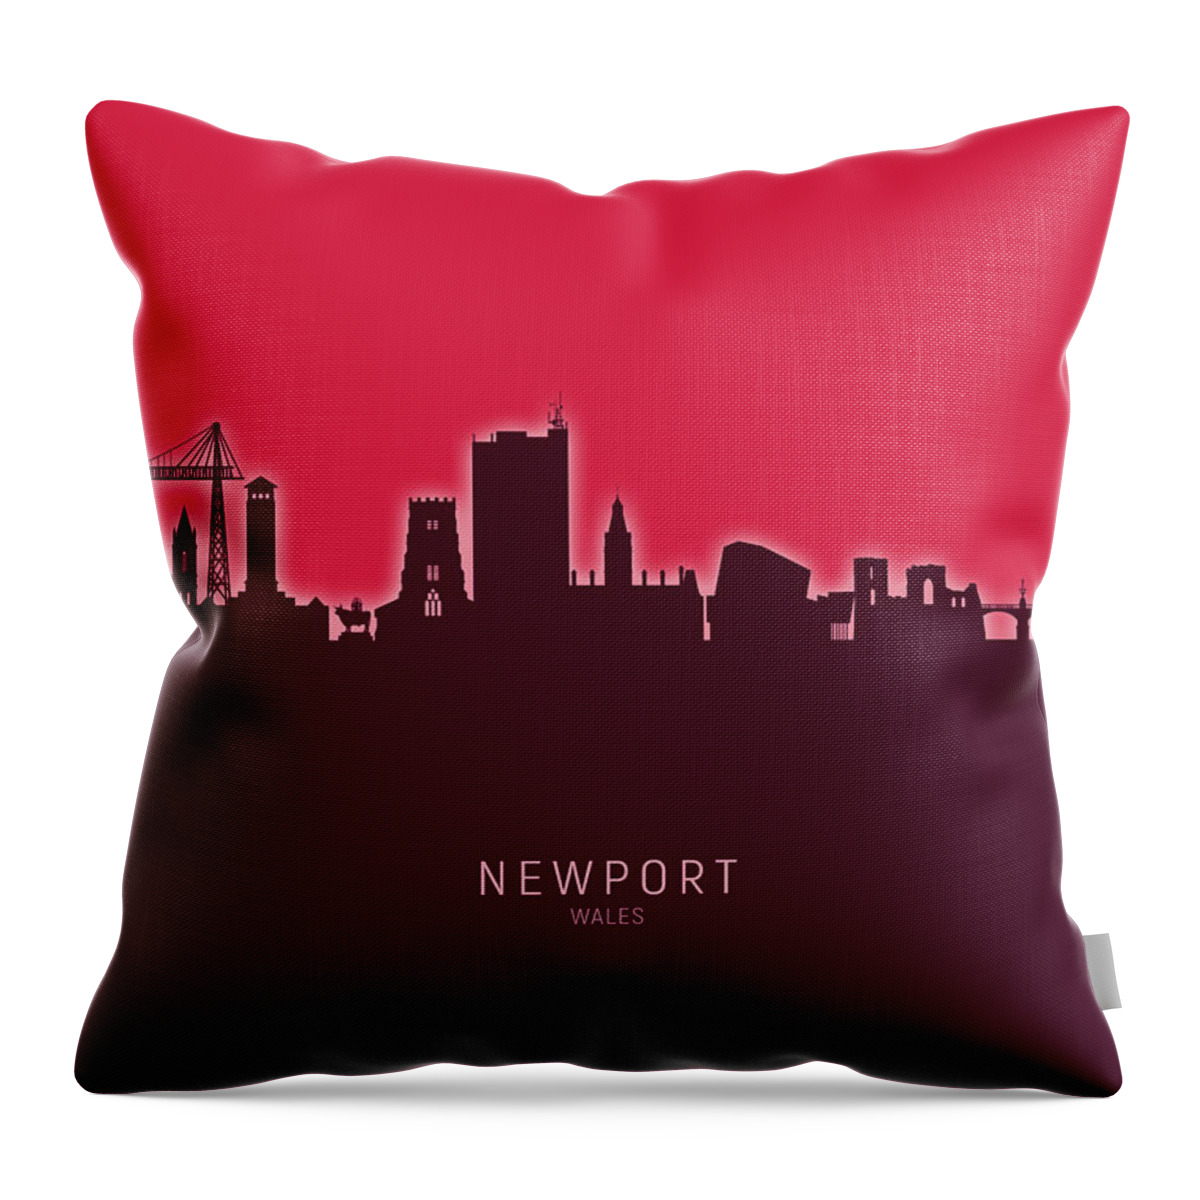 Newport Throw Pillow featuring the digital art Newport Wales Skyline #27 by Michael Tompsett